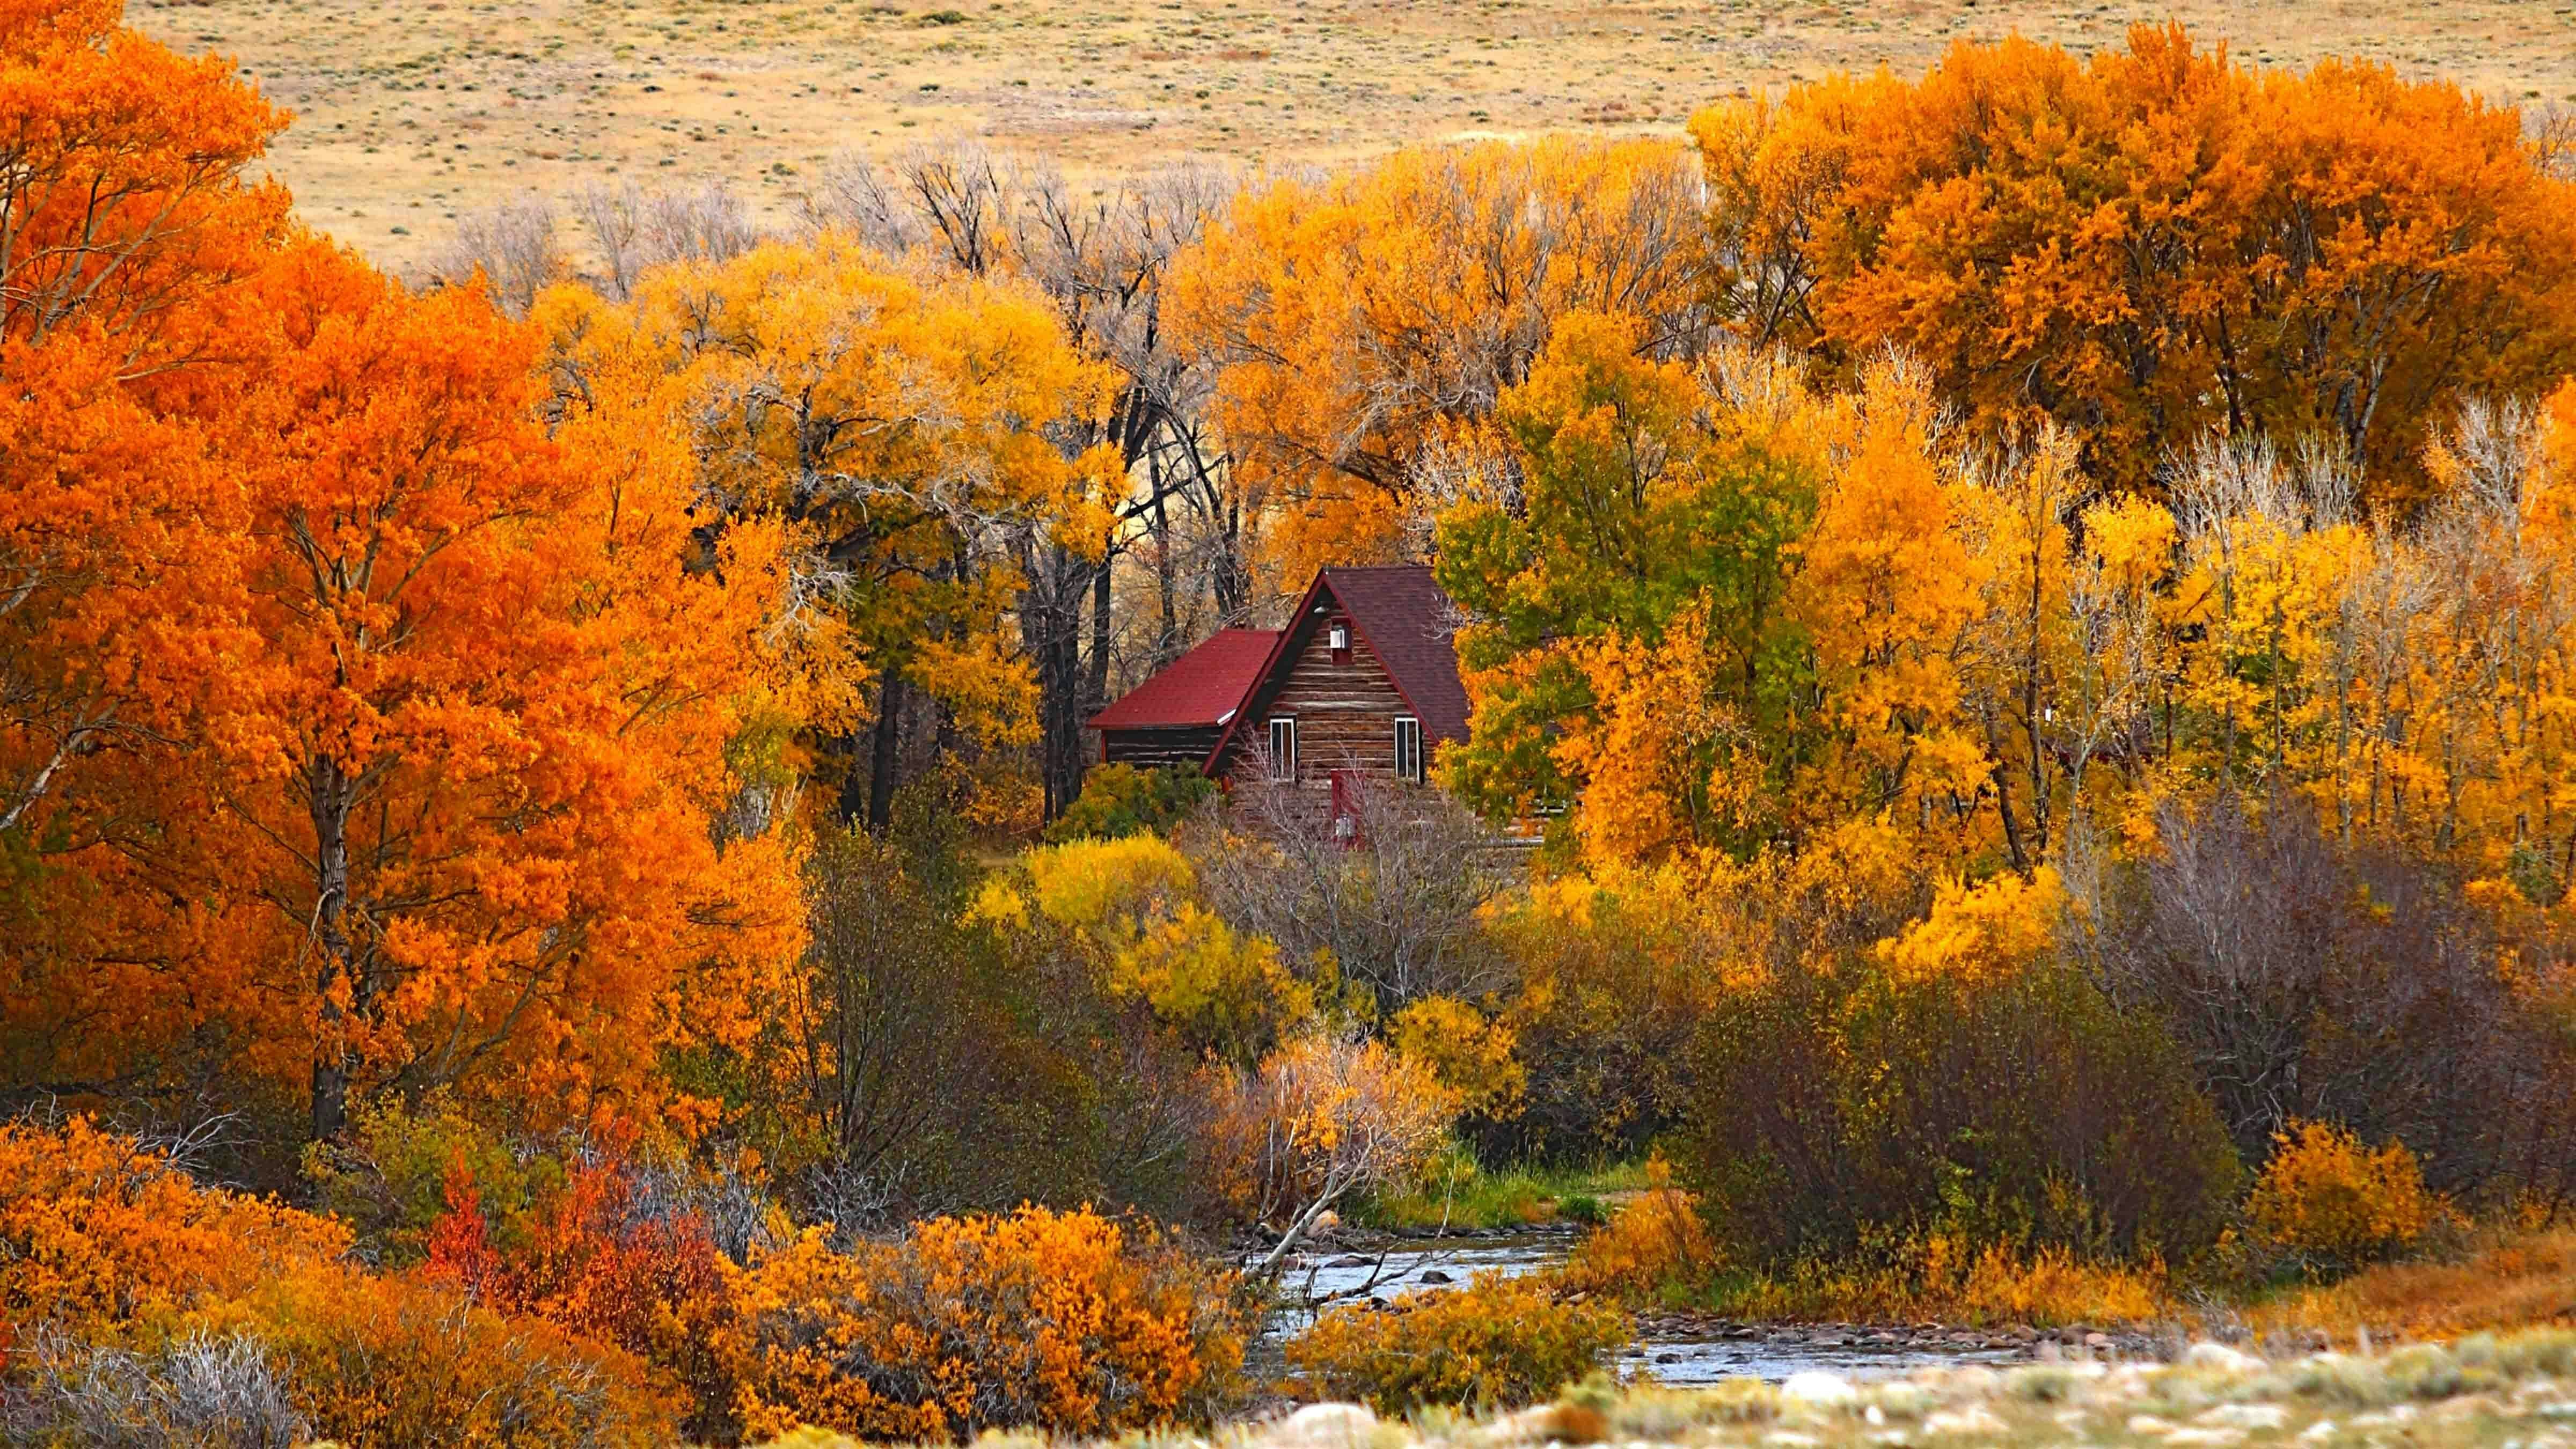 Fall foliage near Centennial, Wyoming.